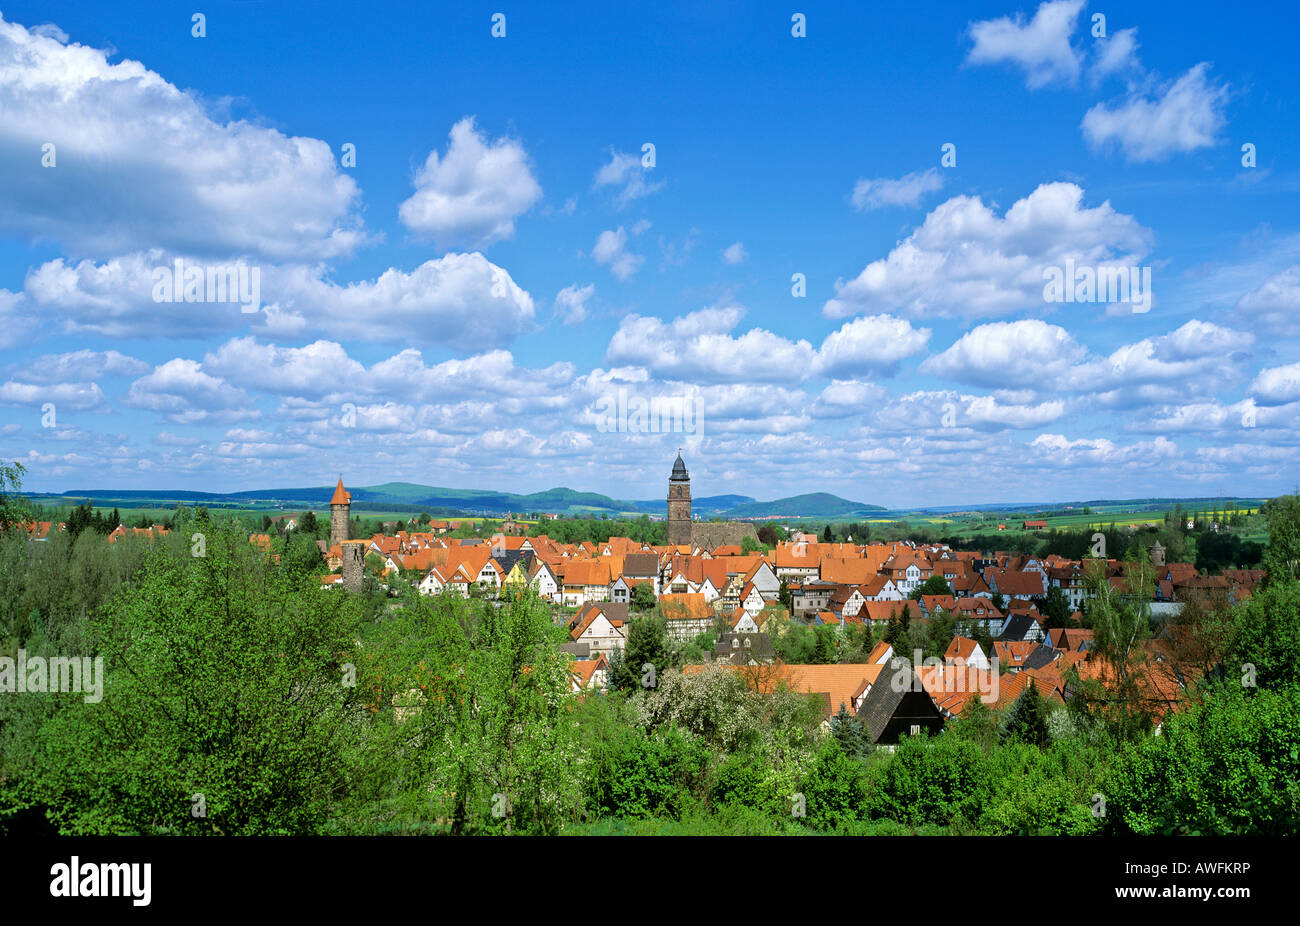 Vue panoramique de la ville de Grebenstein, Hesse, Germany, Europe Banque D'Images